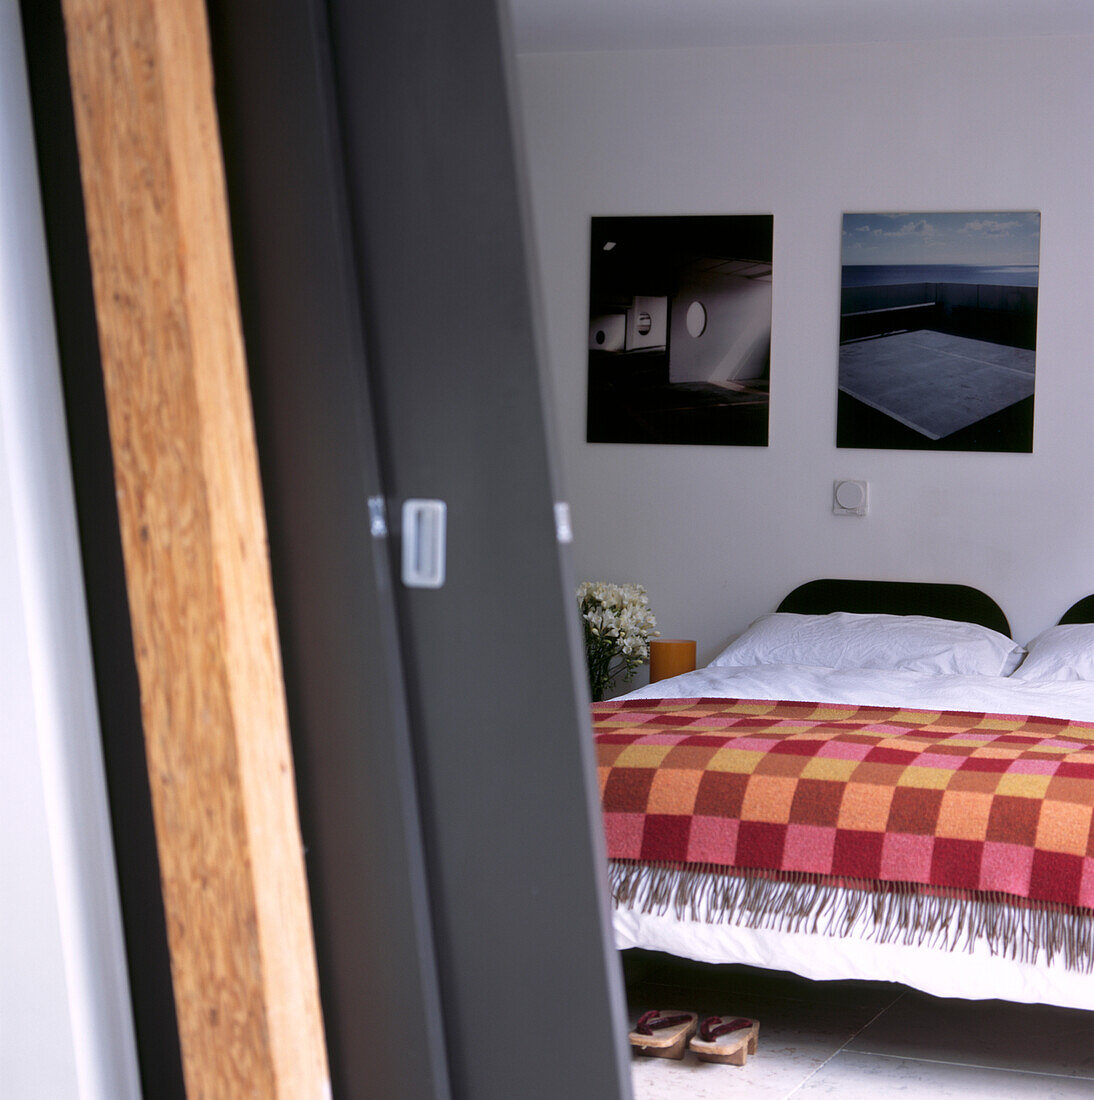 Detail der schokoladenfarbenen Holzschiebetüren, die zum Schlafzimmer führen